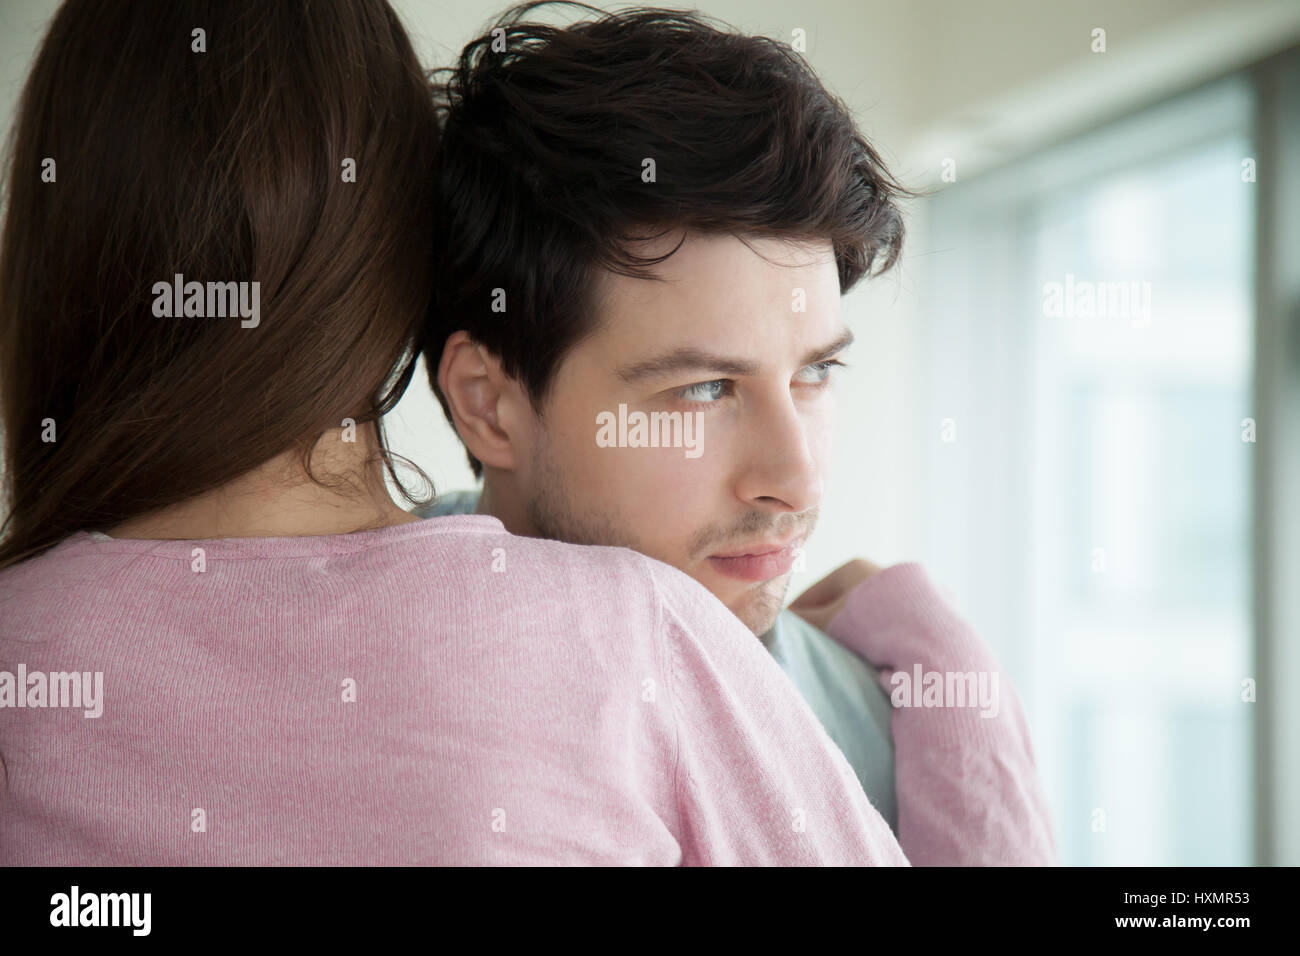 Coppia giovane costeggiata, donna abbracciando consolante uomo, moglie conso Foto Stock